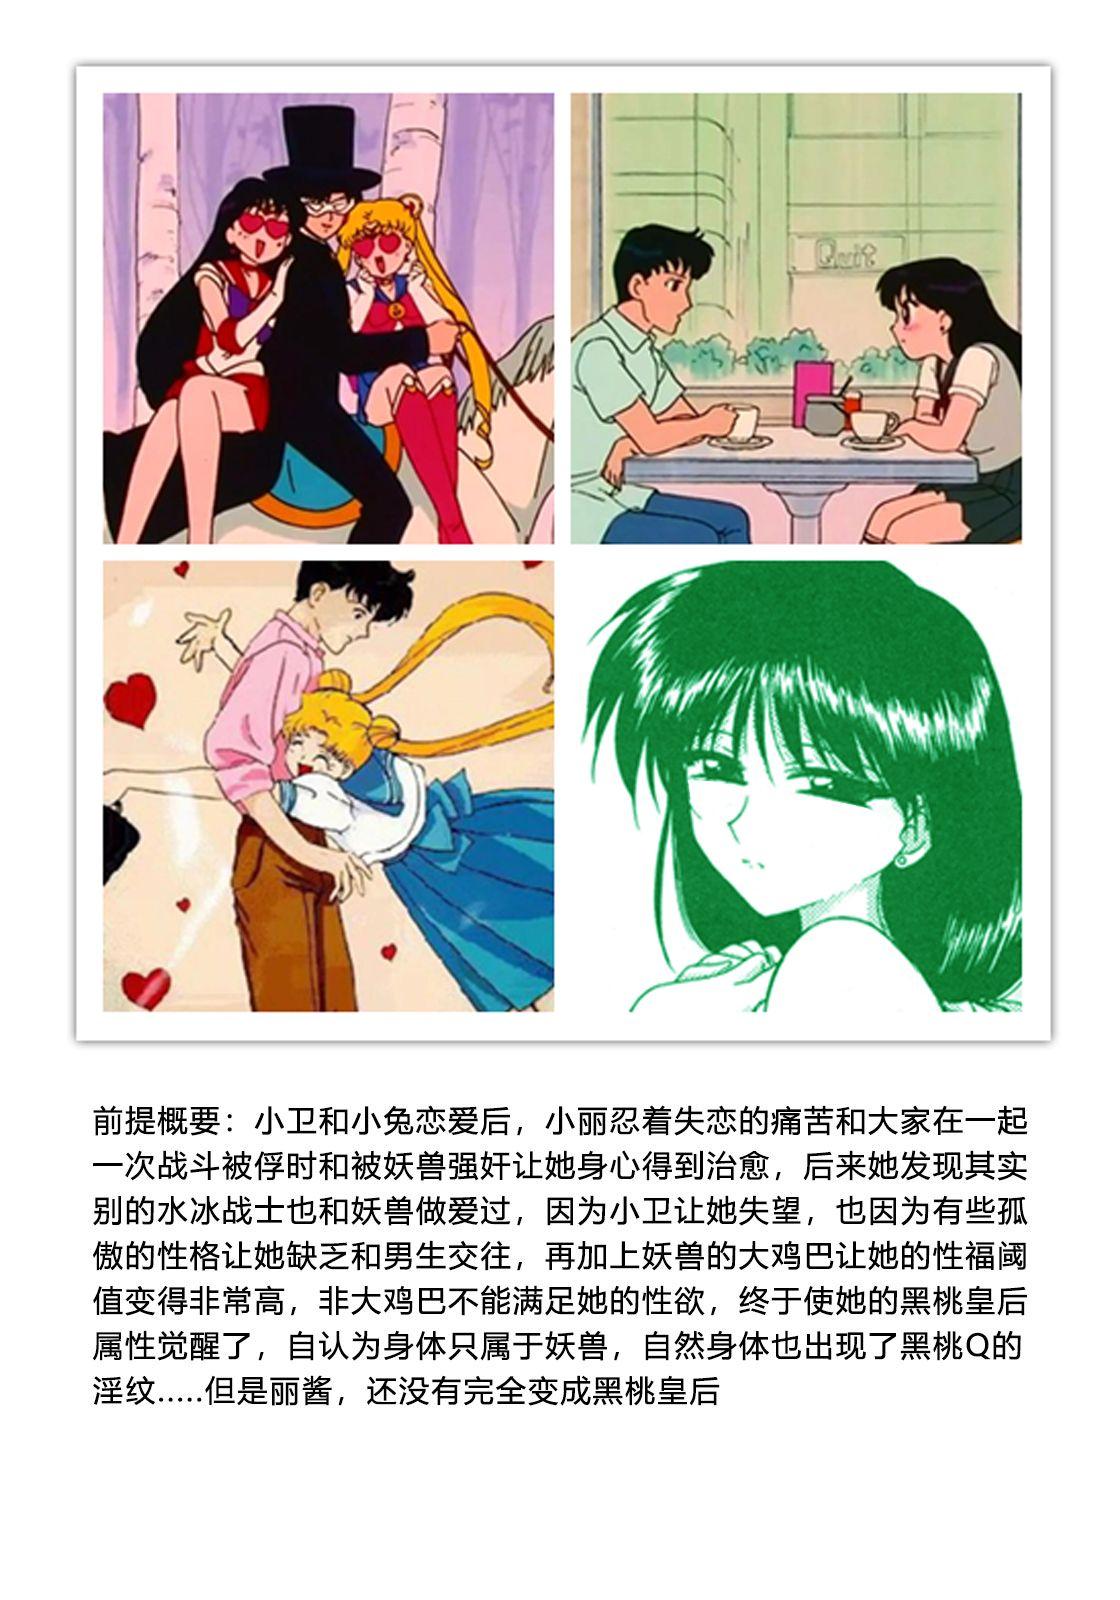 Porra QUEEN OF SPADES - 黑桃皇后 - Sailor moon Rough Sex - Page 12